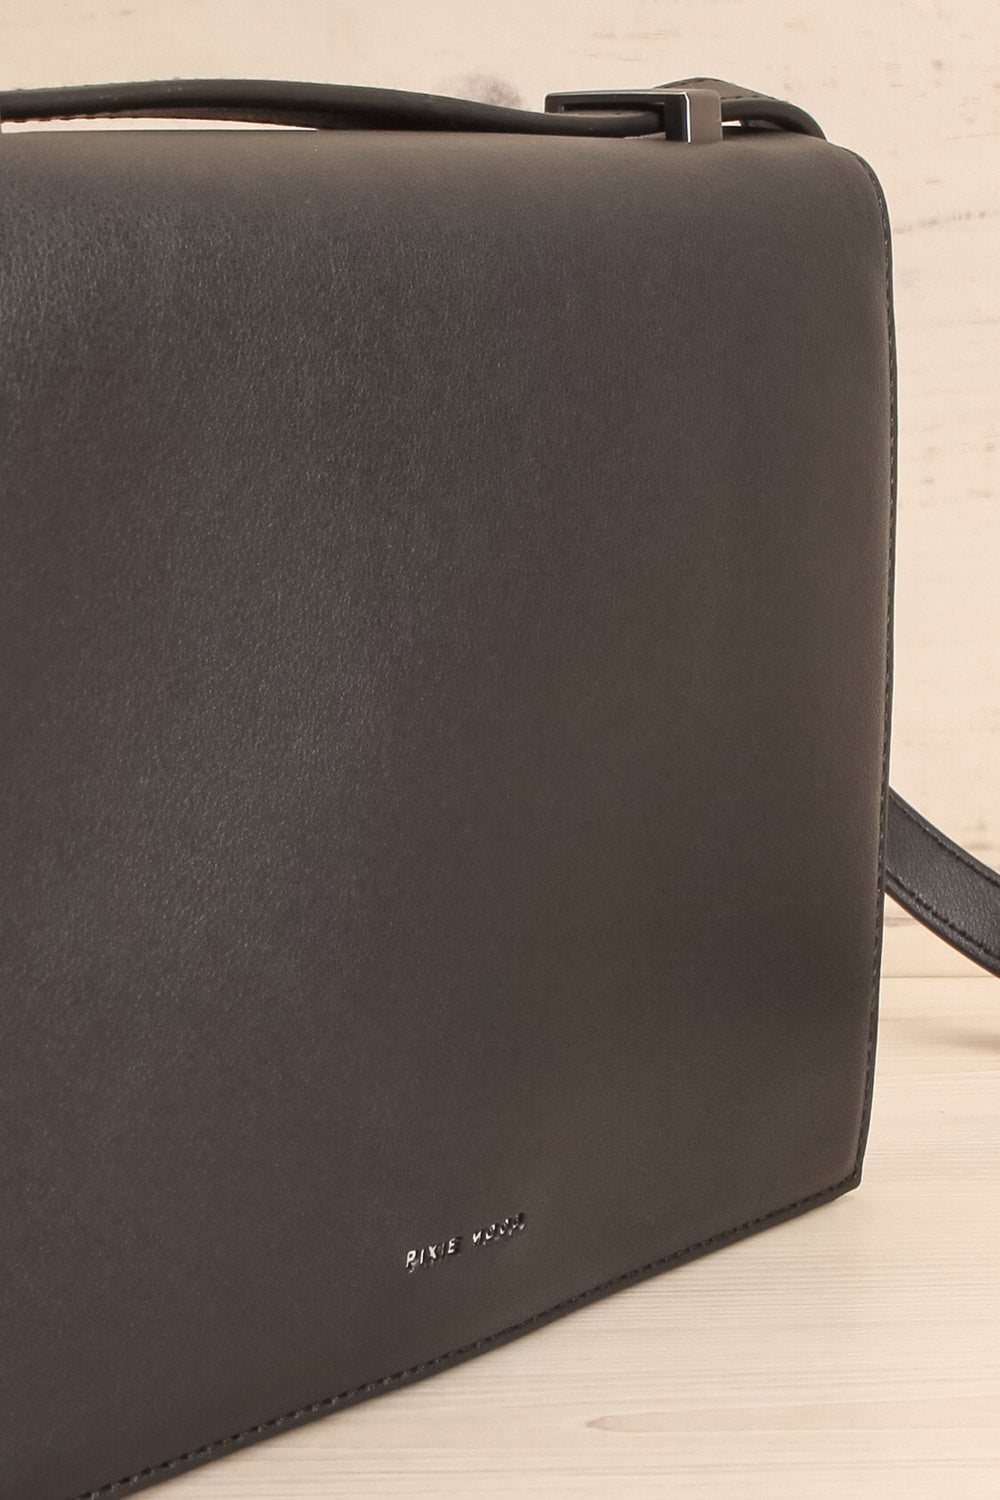 Charlot Black Faux-Leather Pixie Mood Handbag side close-up | La Petite Garçonne